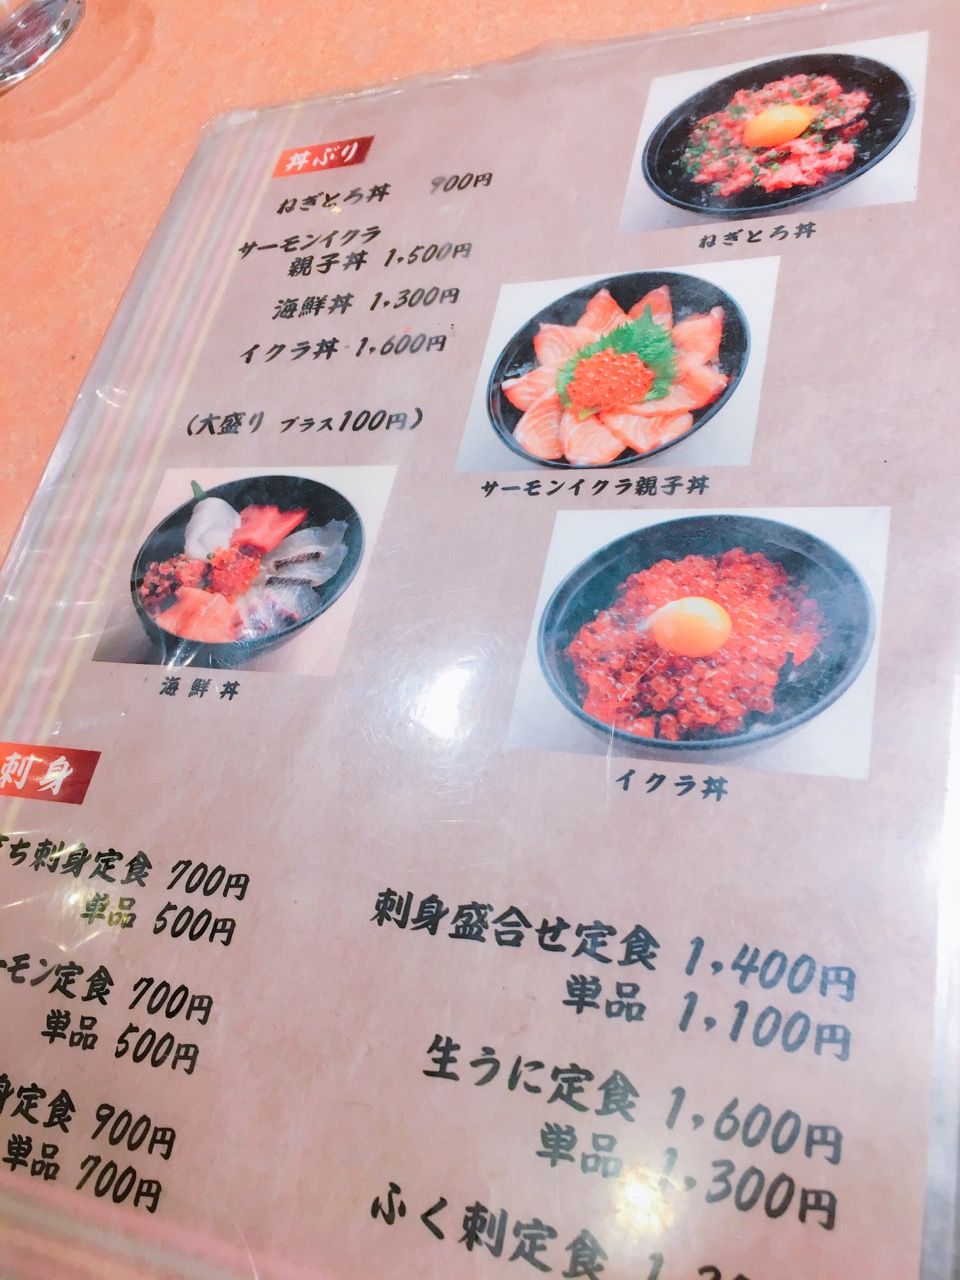 山口県唐戸市場でイクラ丼ランチ 市場食堂 よし 自由気ままにやるブログ